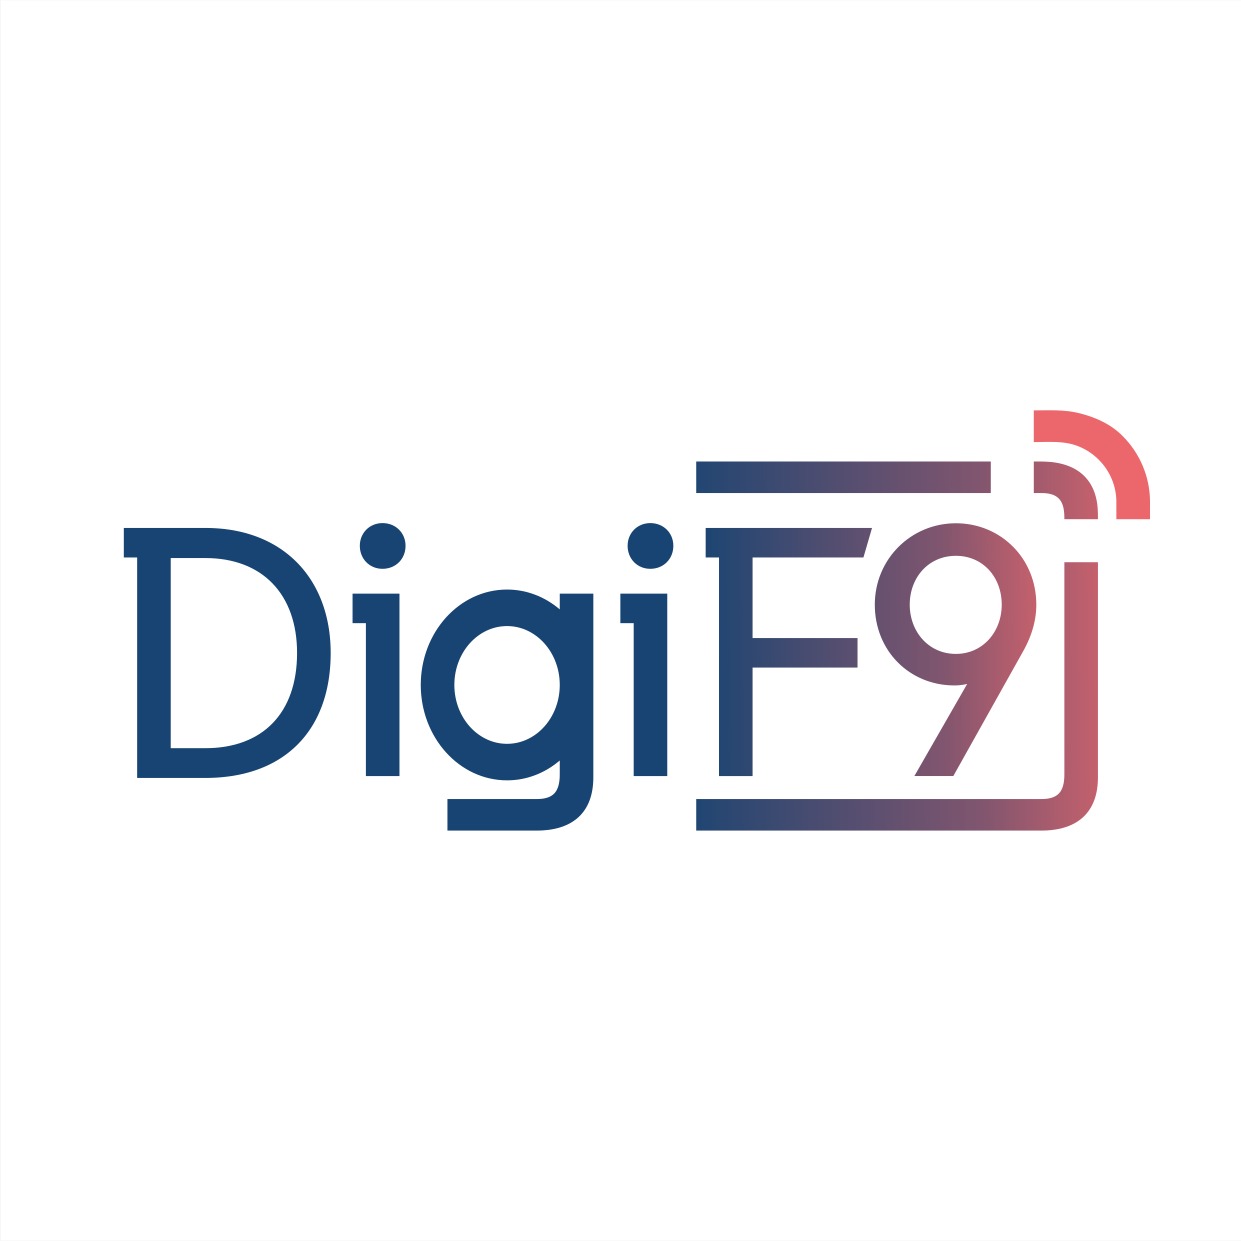 DigiF9 Ltd